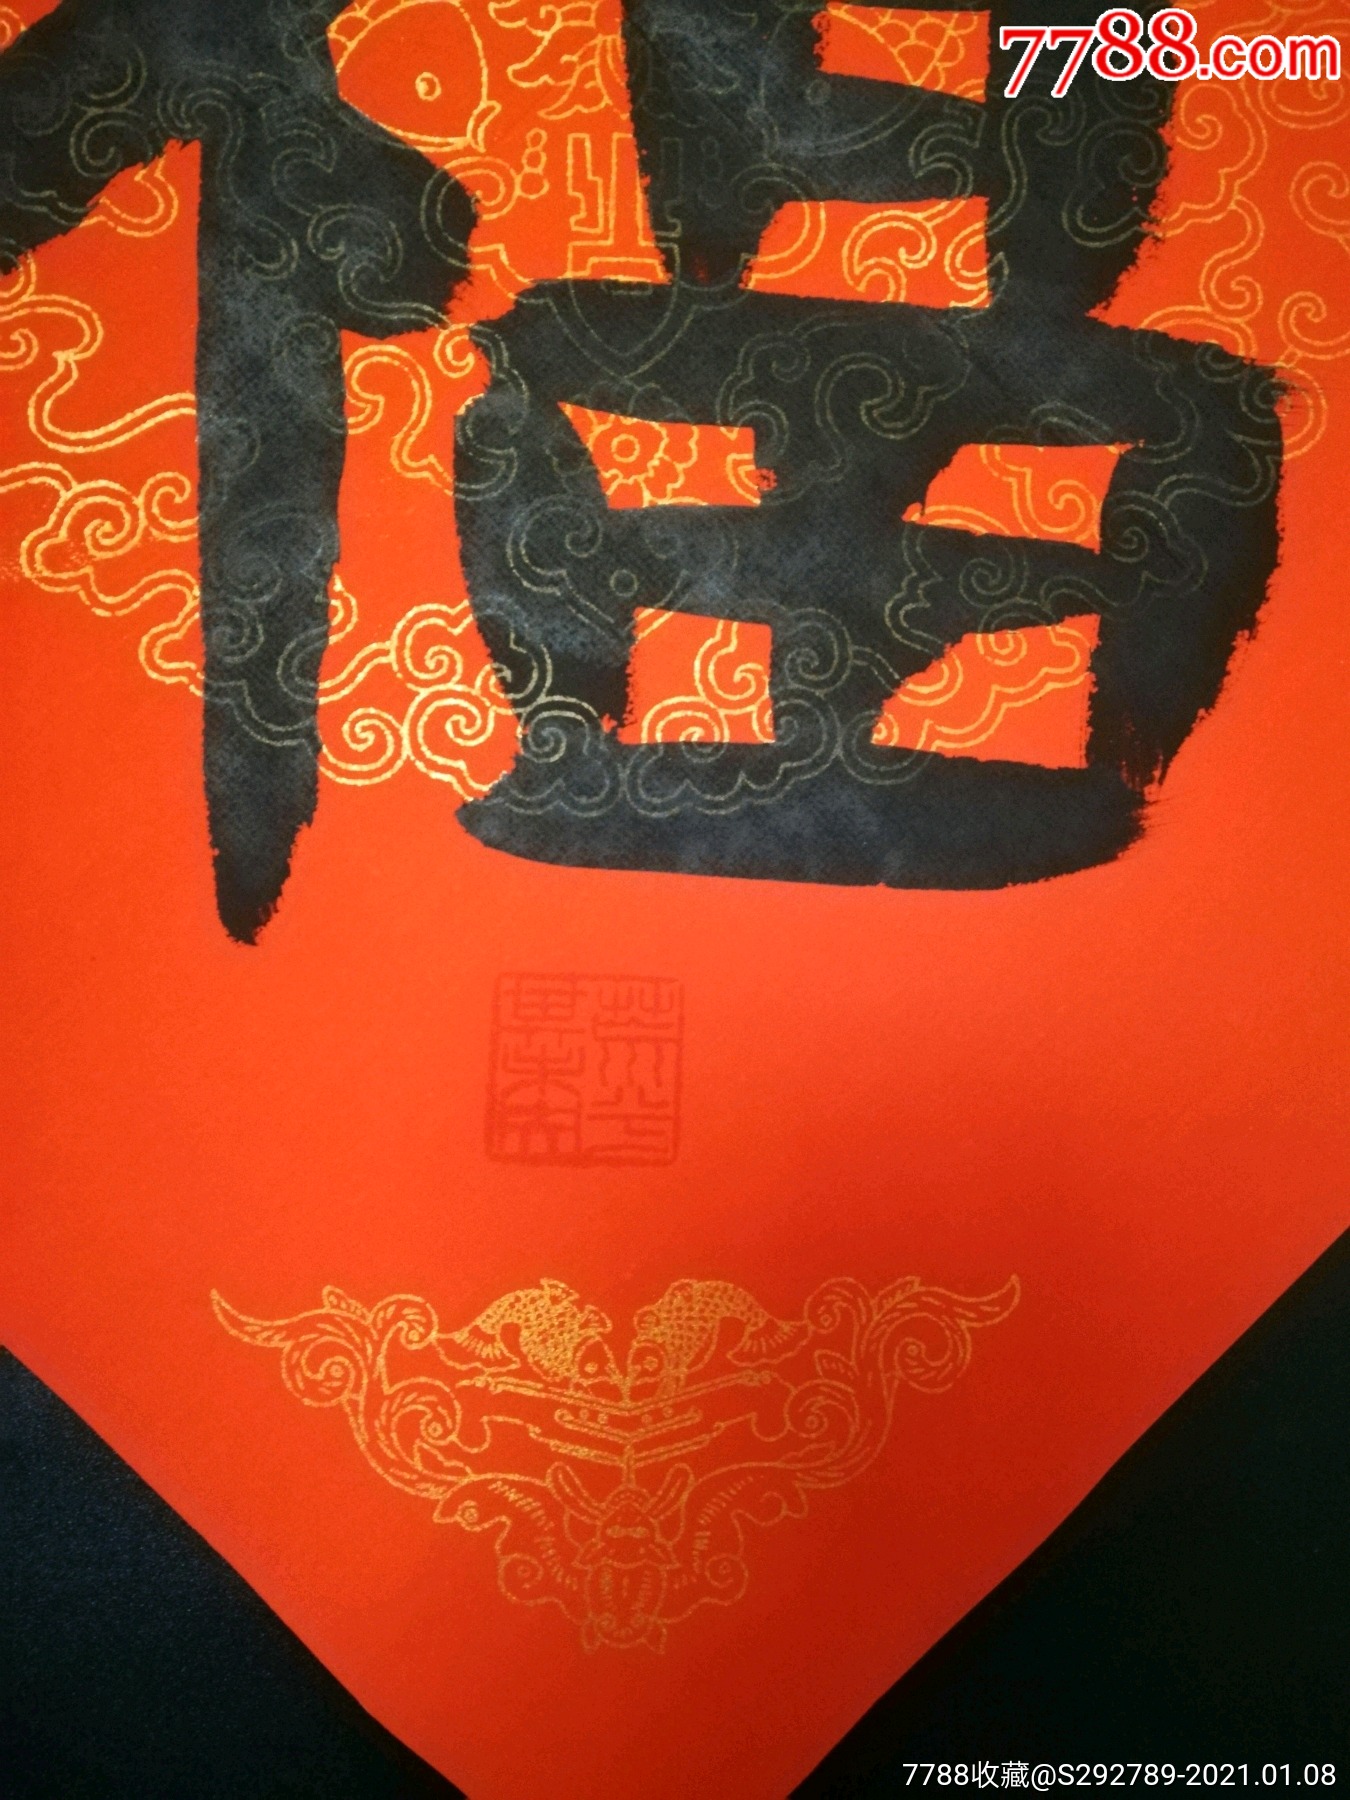 低价放漏惠拍中书协会员孟钦峰手绘书法《福》一幅,书画院直供保真.